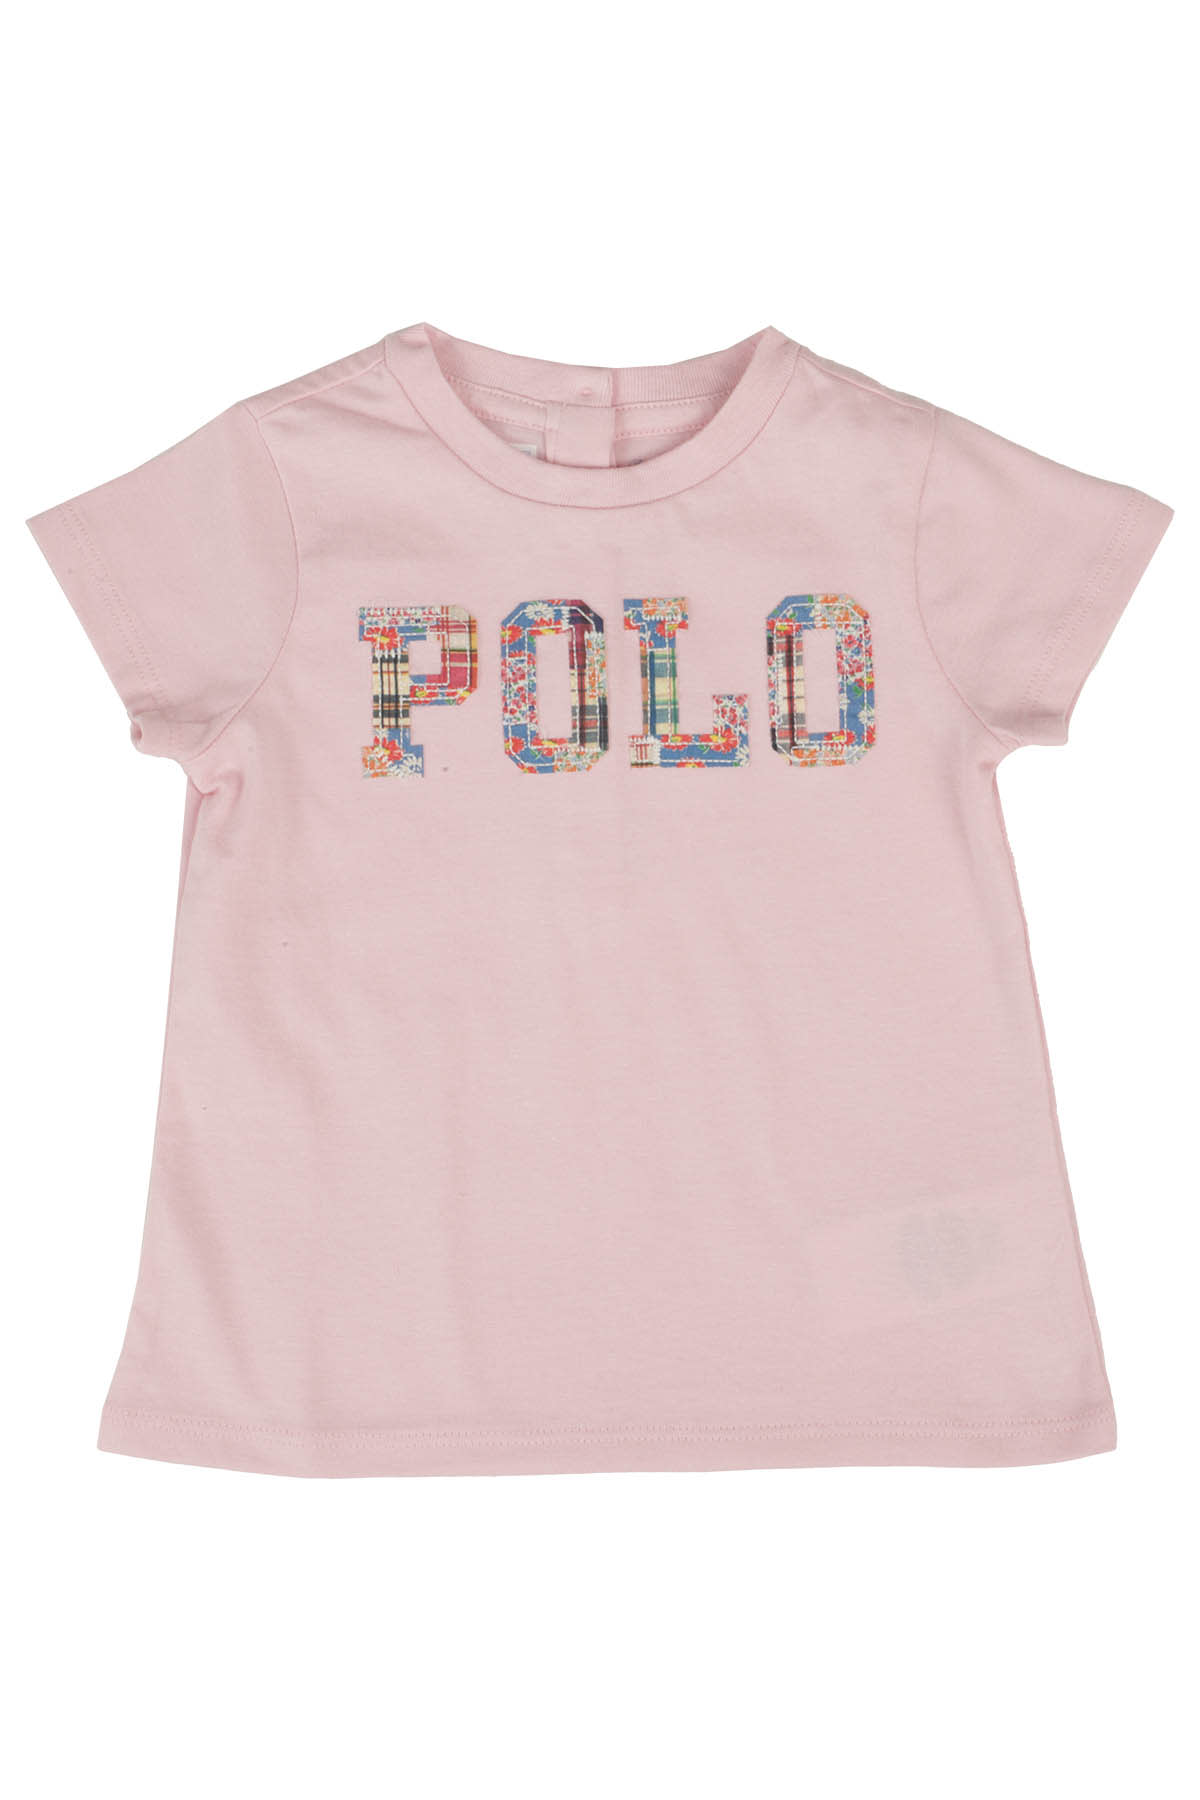 Polo Ralph Lauren Kids' Tee In Pink